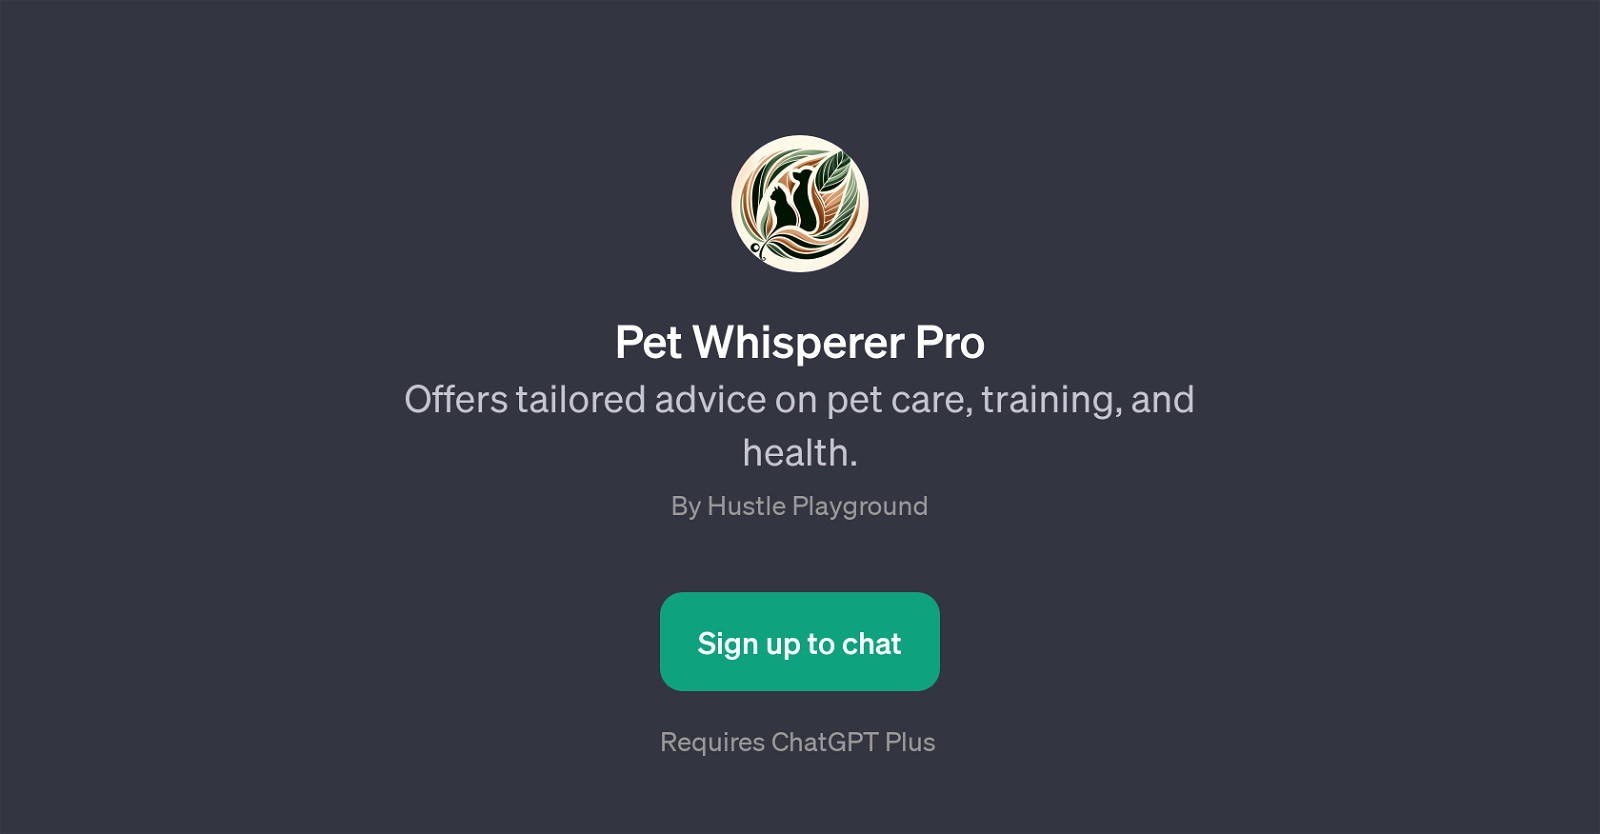 Pet Whisperer Pro website